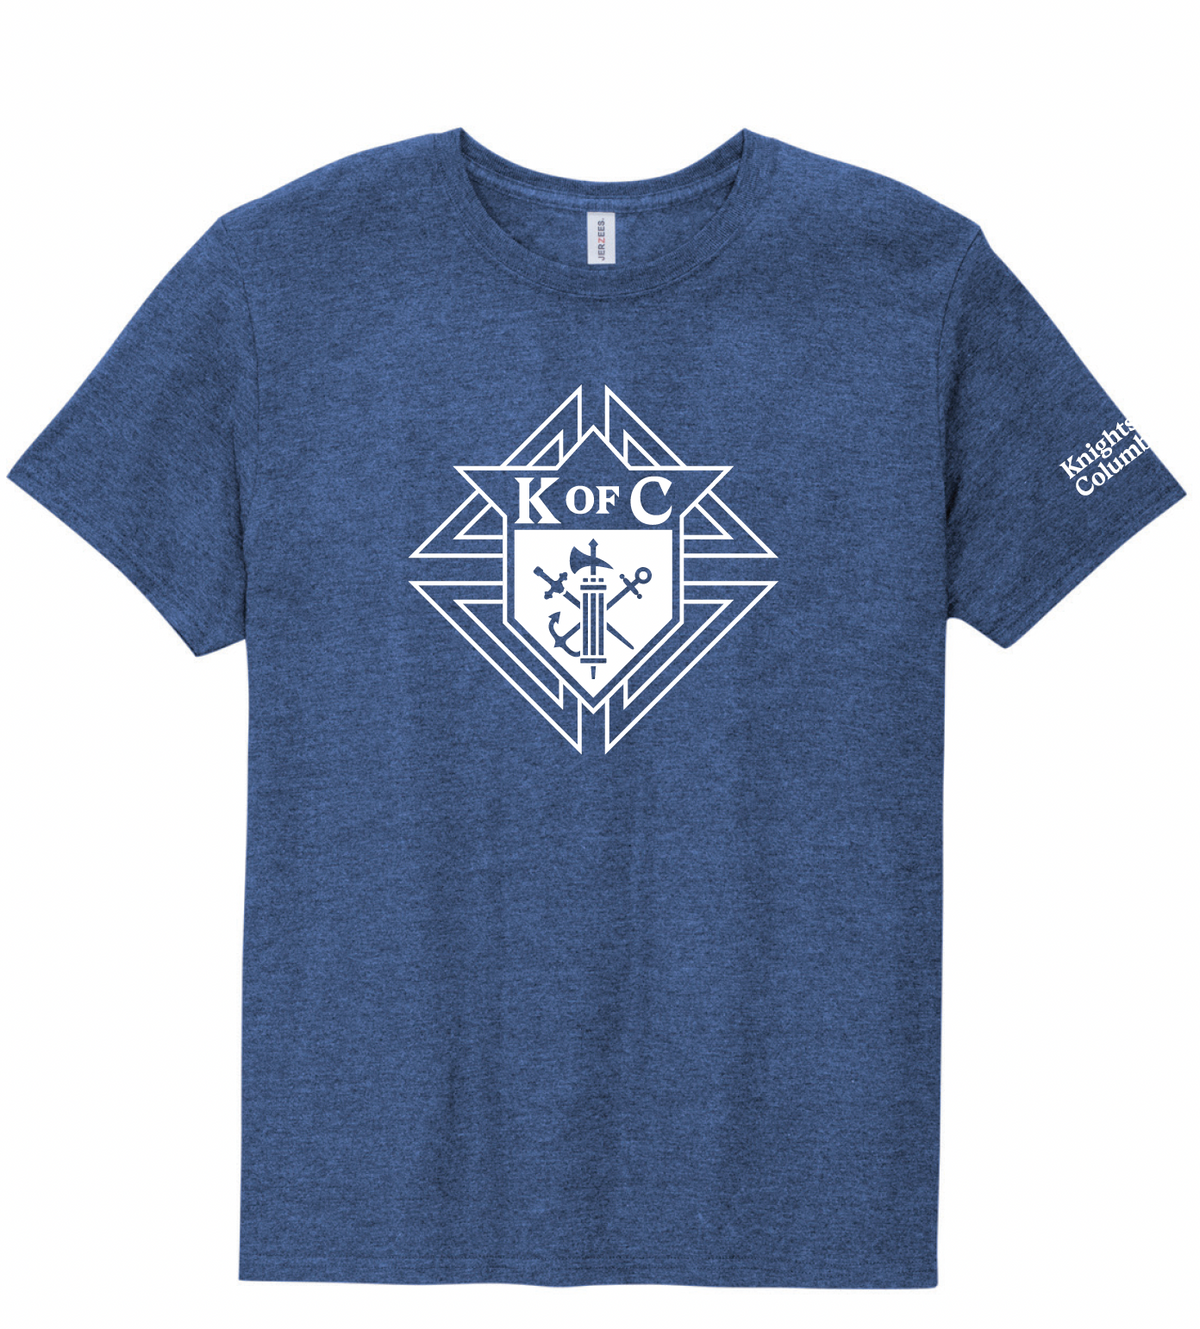 KofC Emblem T-Shirt